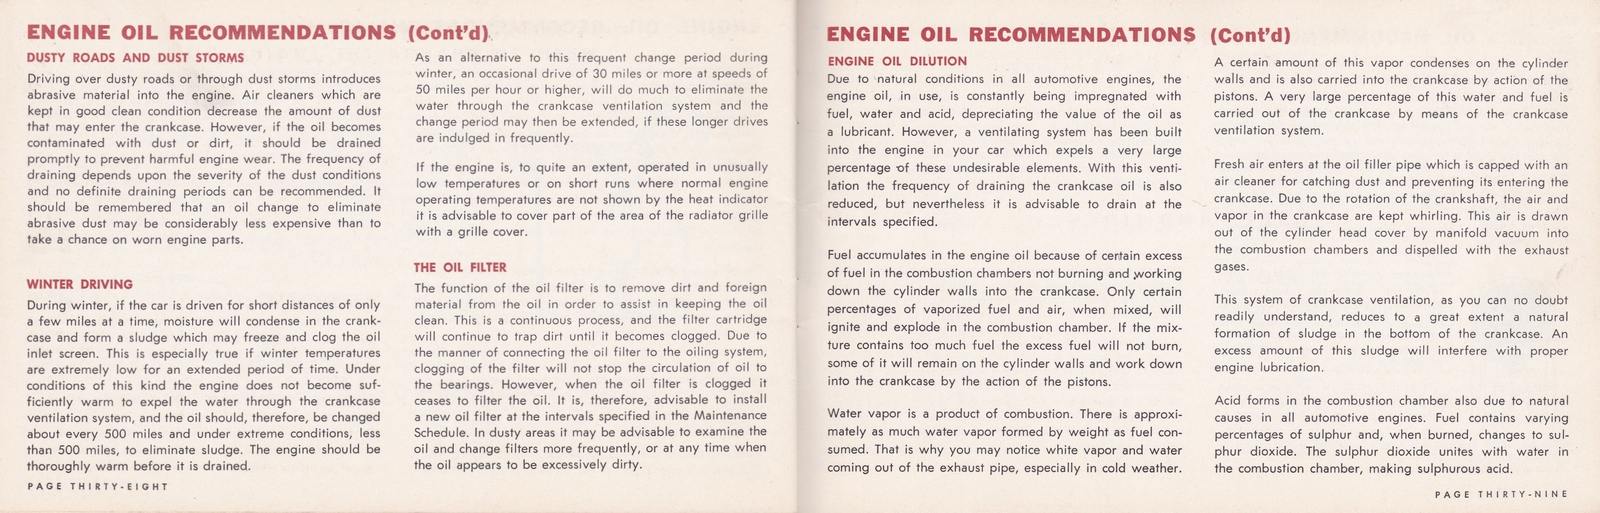 n_1964 Chrysler Owner's Manual (Cdn)-38-39.jpg